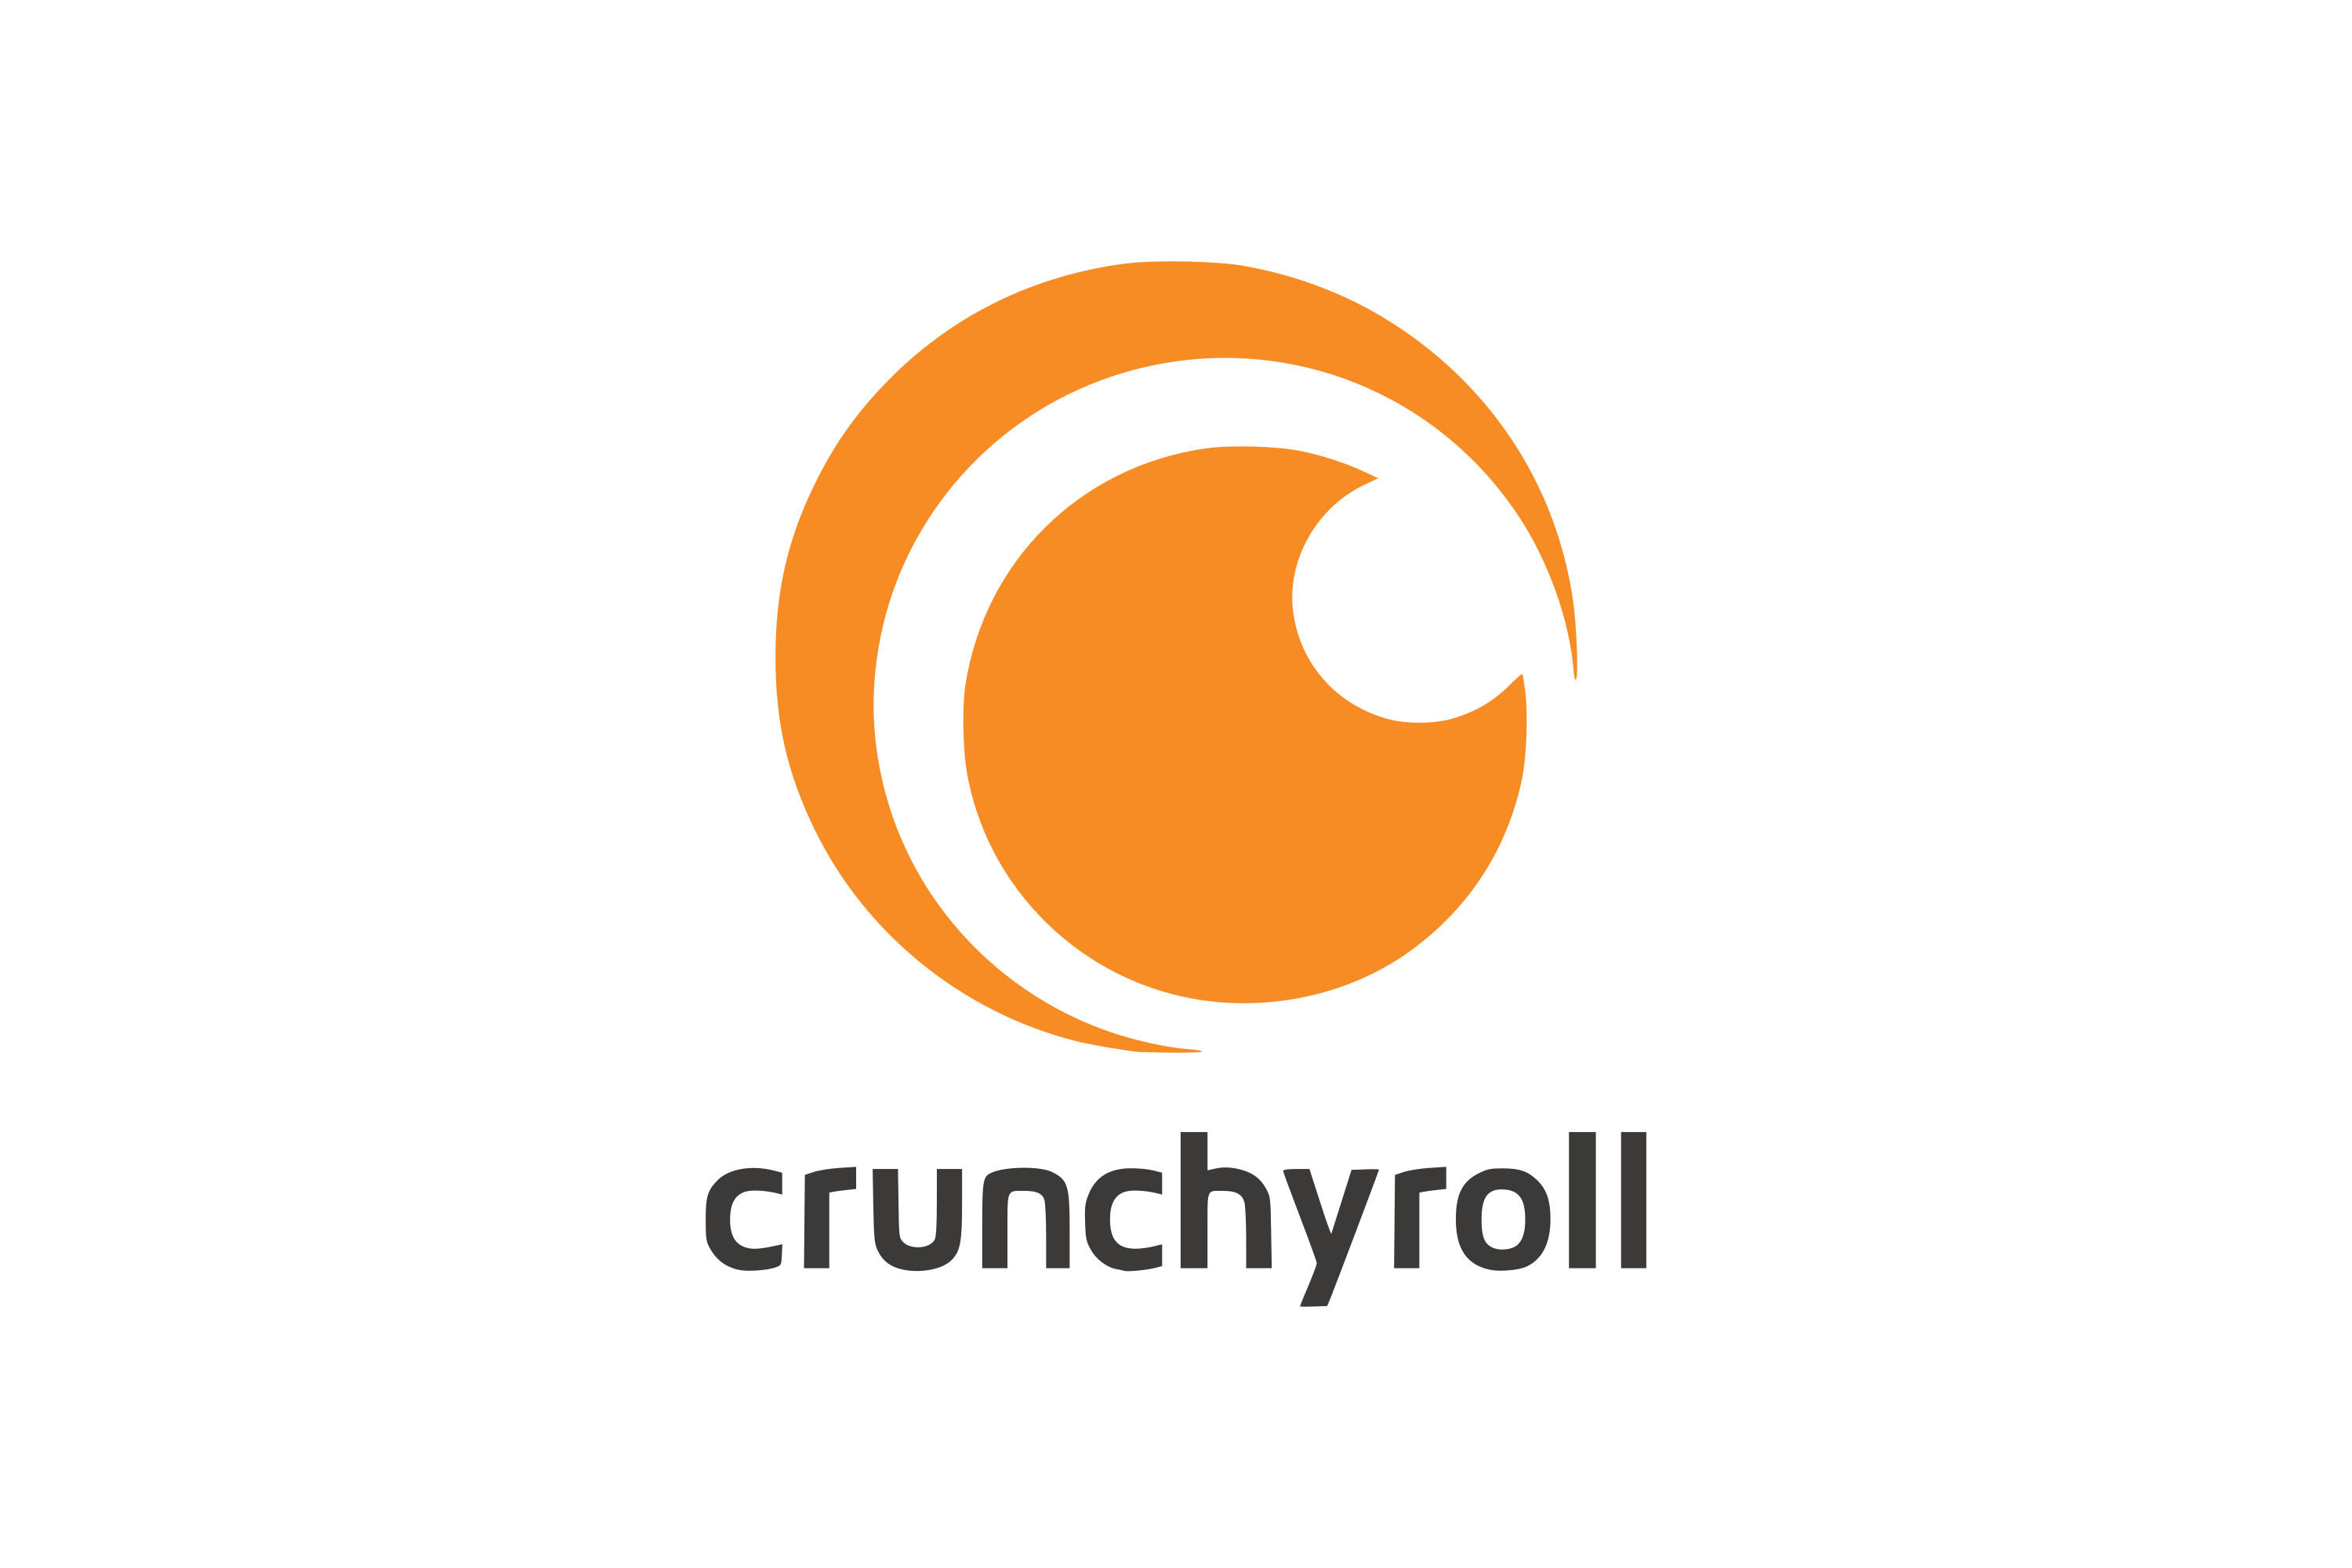 download food wars crunchyroll for free